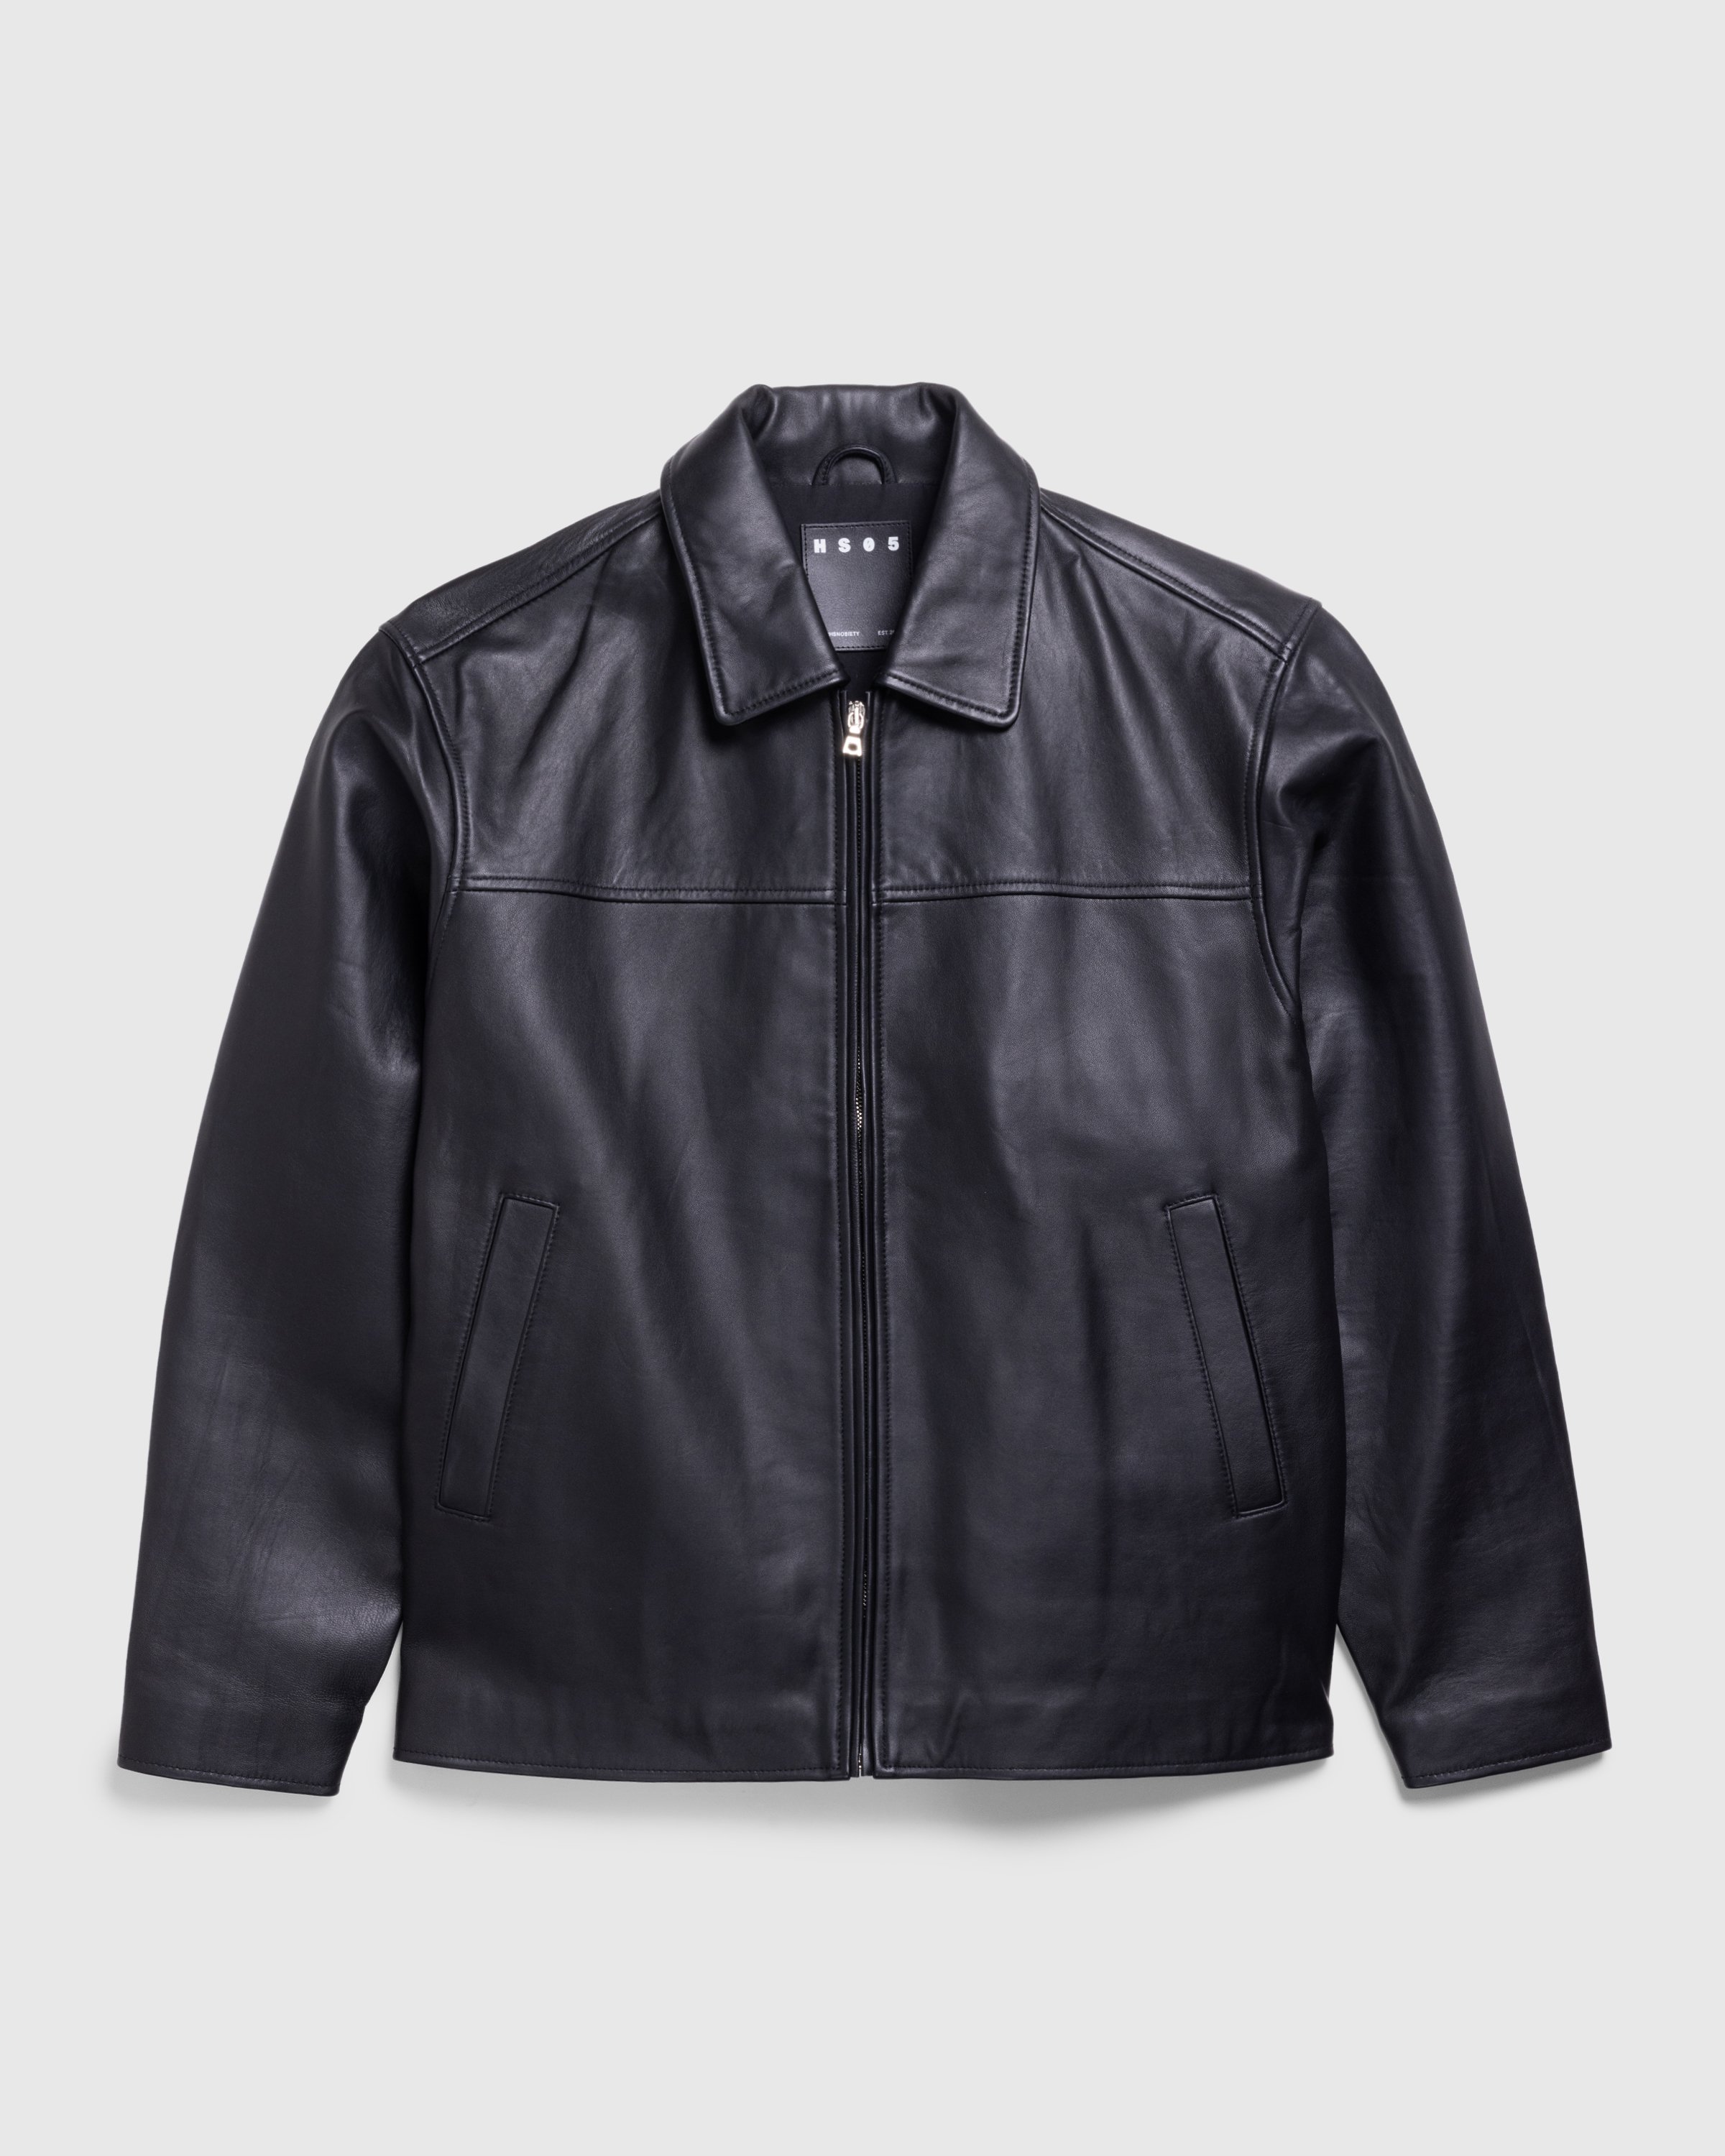 Highsnobiety HS05 - Leather Jacket Black - Clothing - Black - Image 1